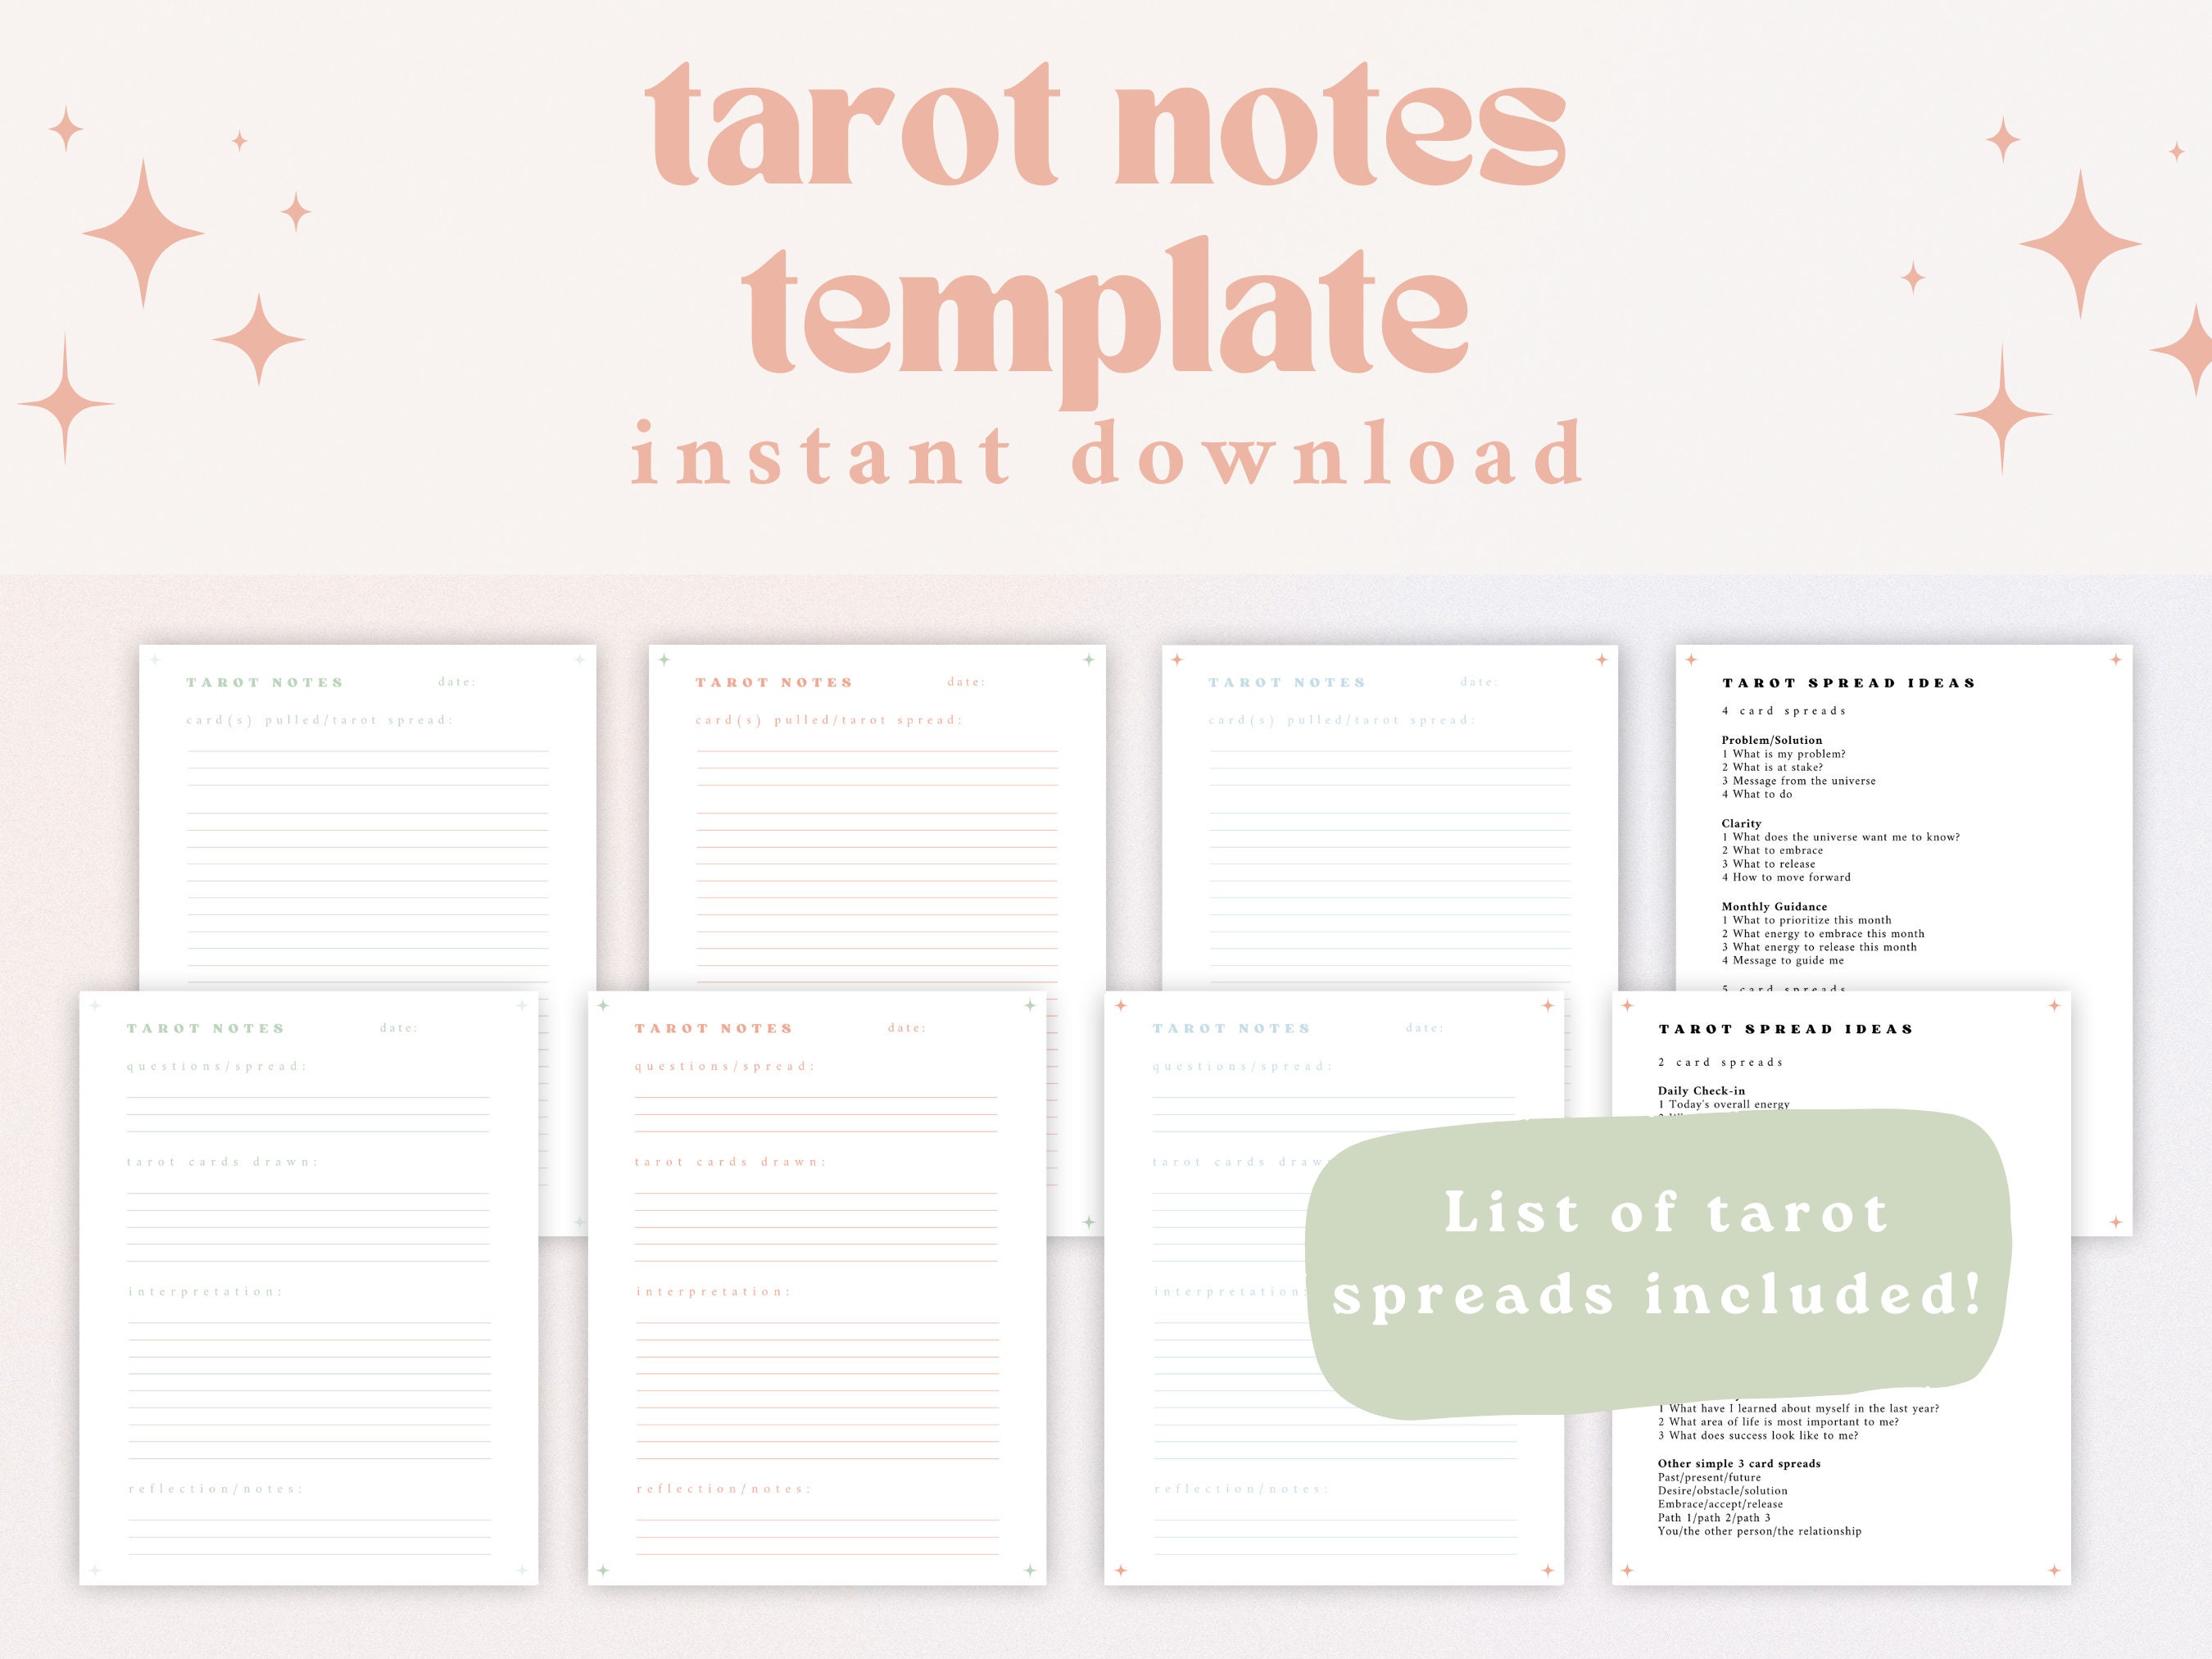 Tarot Journal | Tarot Study Guide | Tarot Notes Template